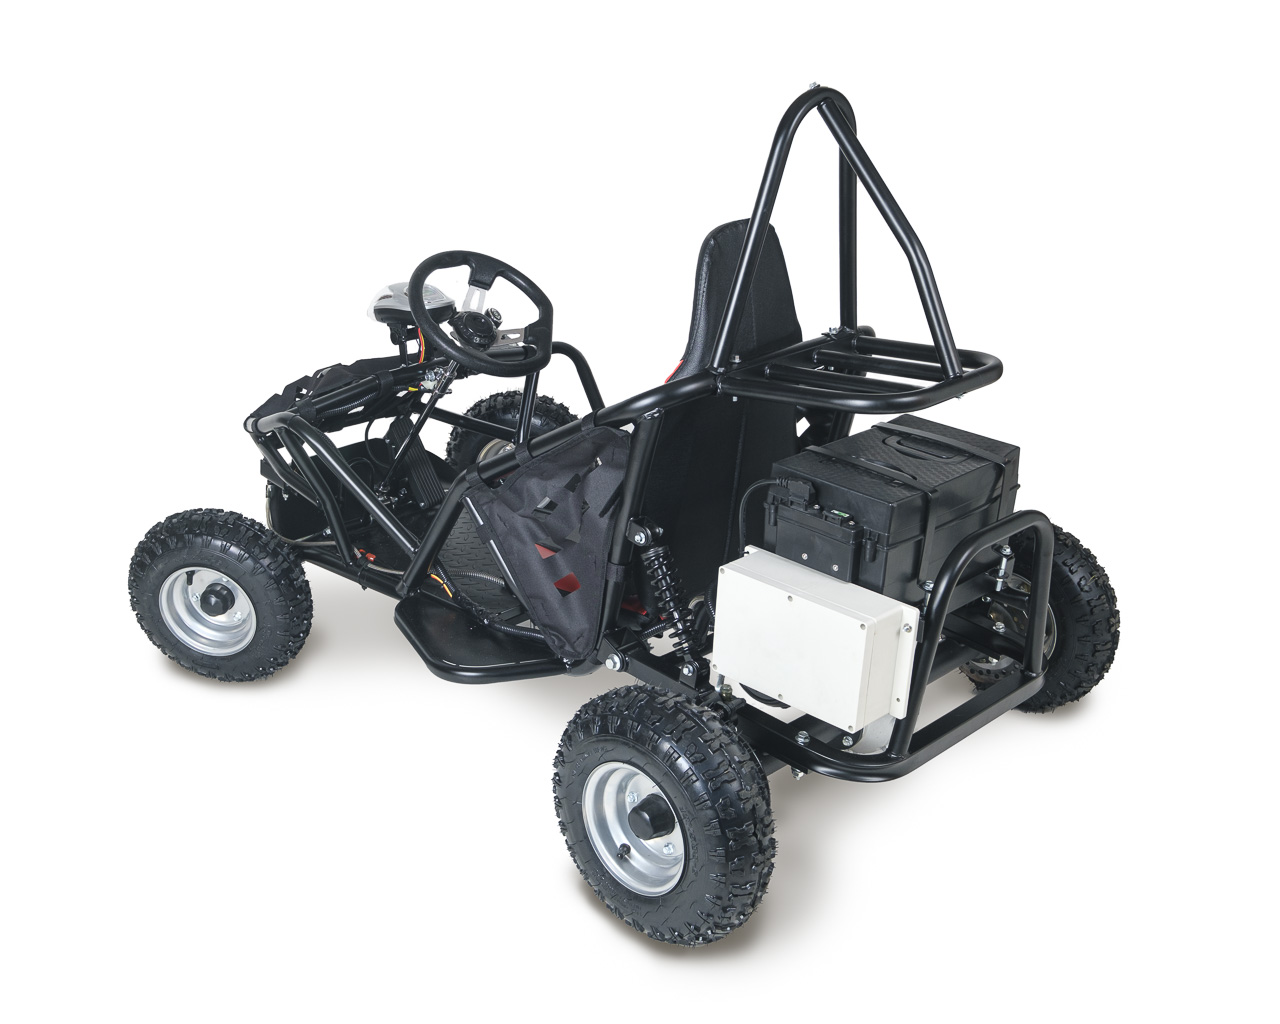 New Custom Built Go-Kart For Sale: Black, 6 1/2 HP, Two Seater